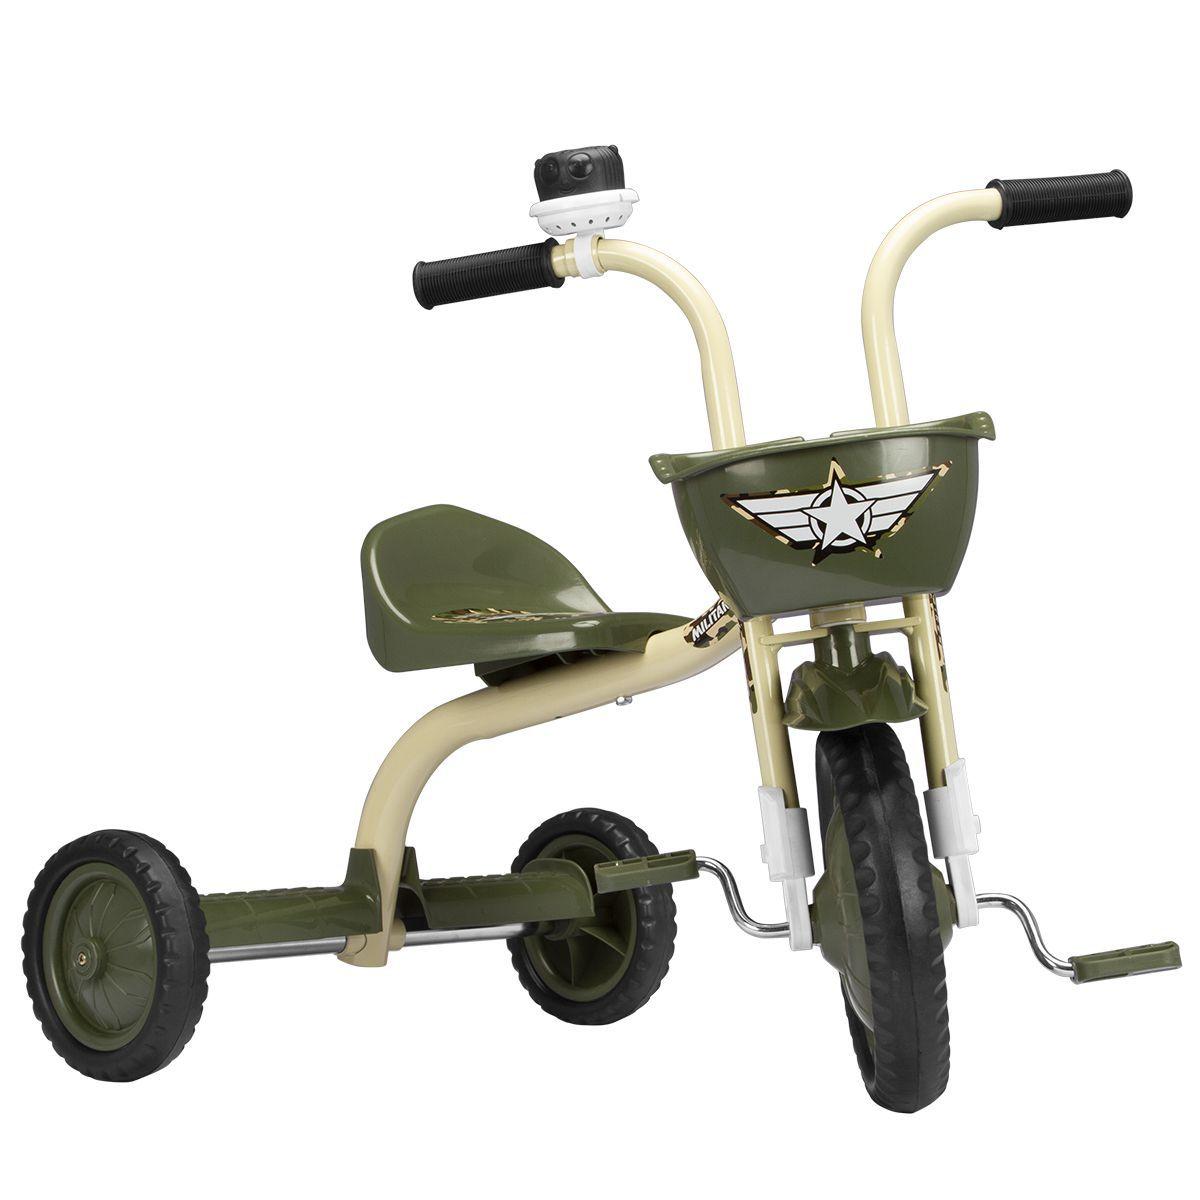 Velotrol Motoca Triciclo Infantil Brinquedo Menina Nathor